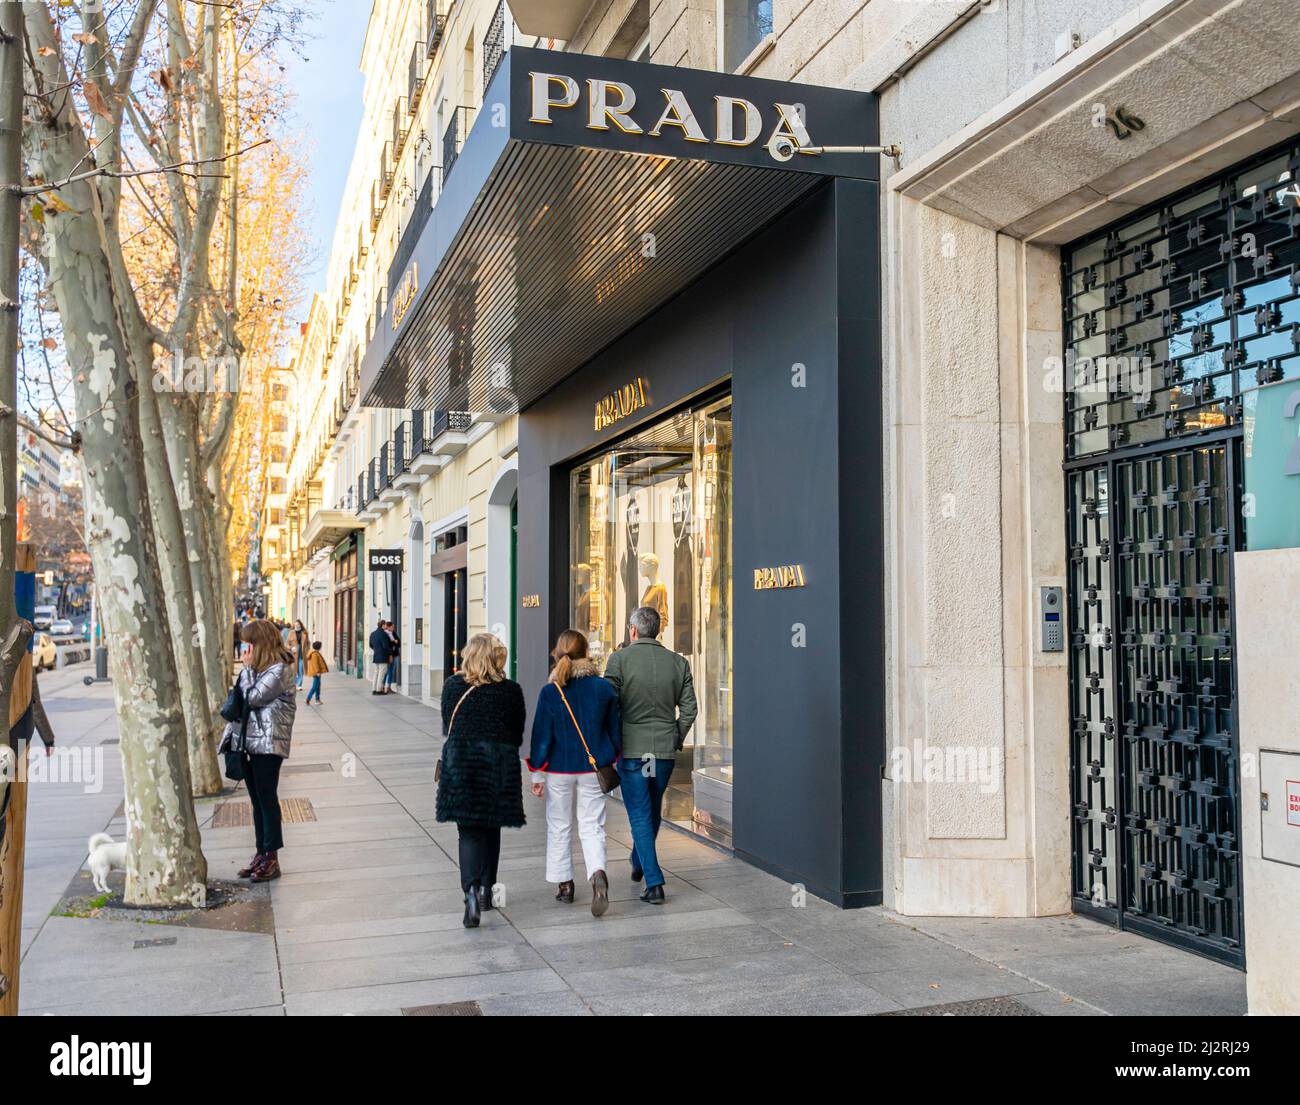 Façade du magasin Prada, Calle de Serrano, Madrid, Espagne Photo Stock -  Alamy